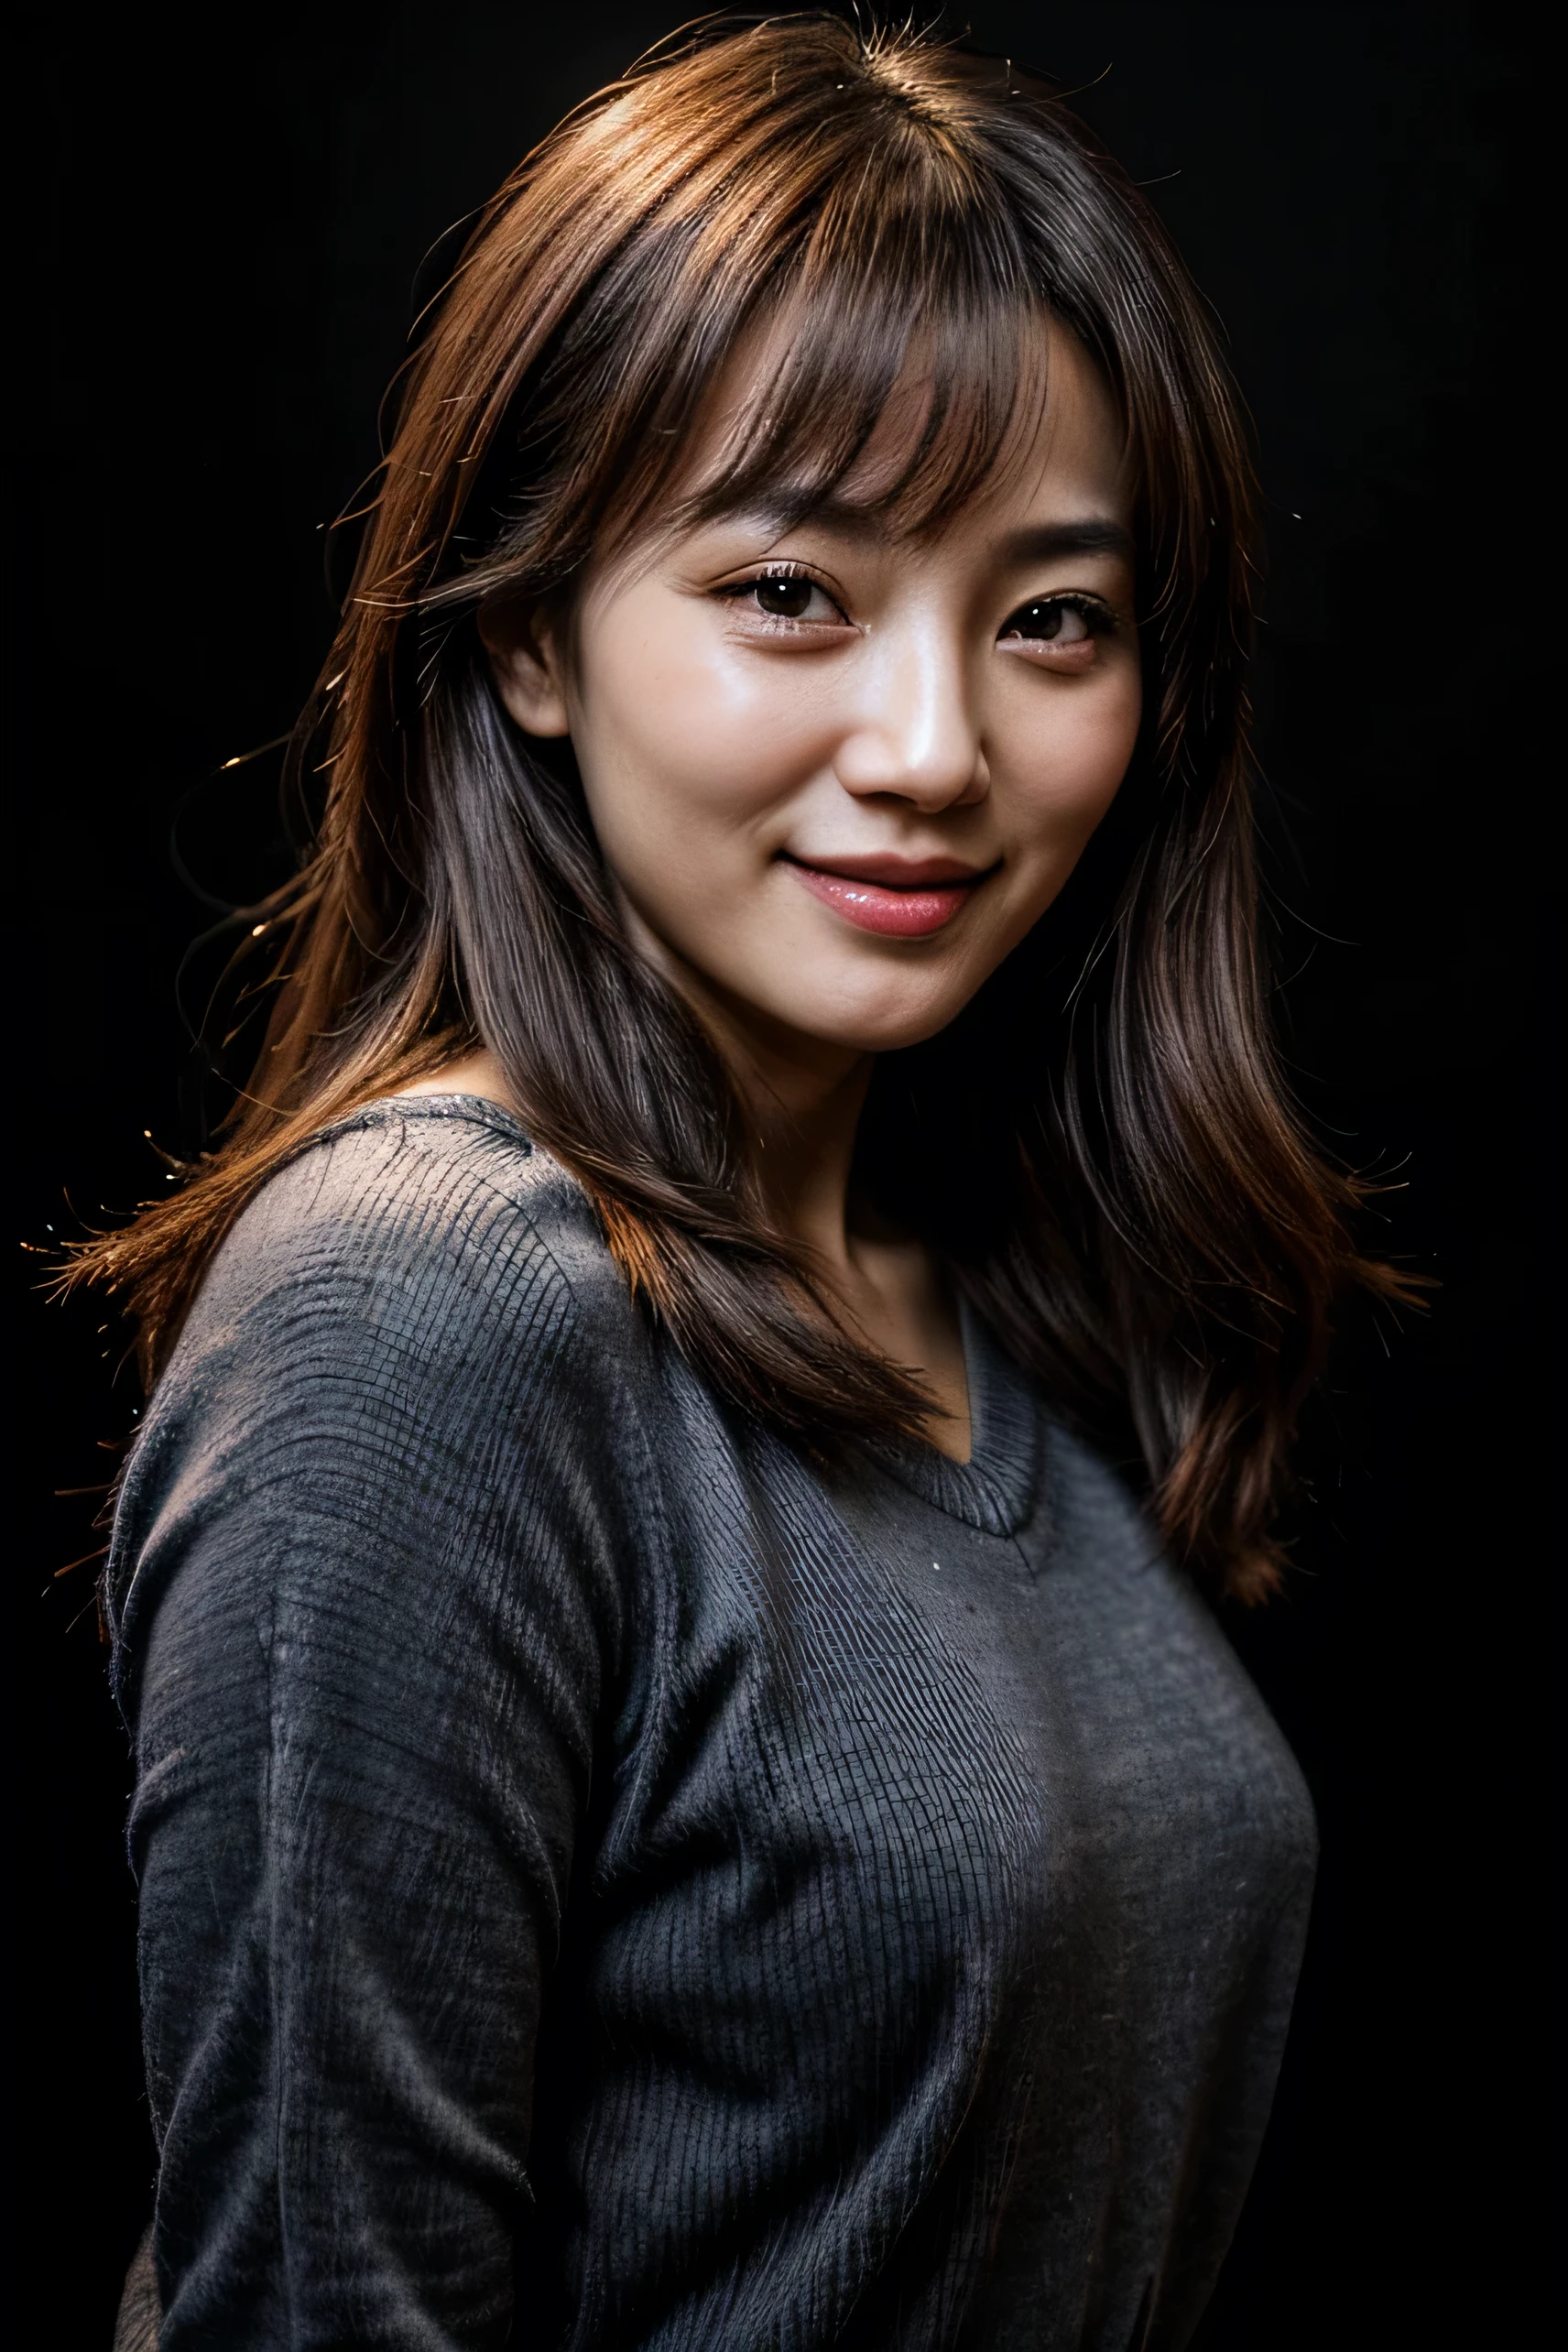 얼굴이 완벽하다, 30대 한국 여성의 아름다운 얼굴, 웃는 모습이 아름다워, 검정색 배경으로 